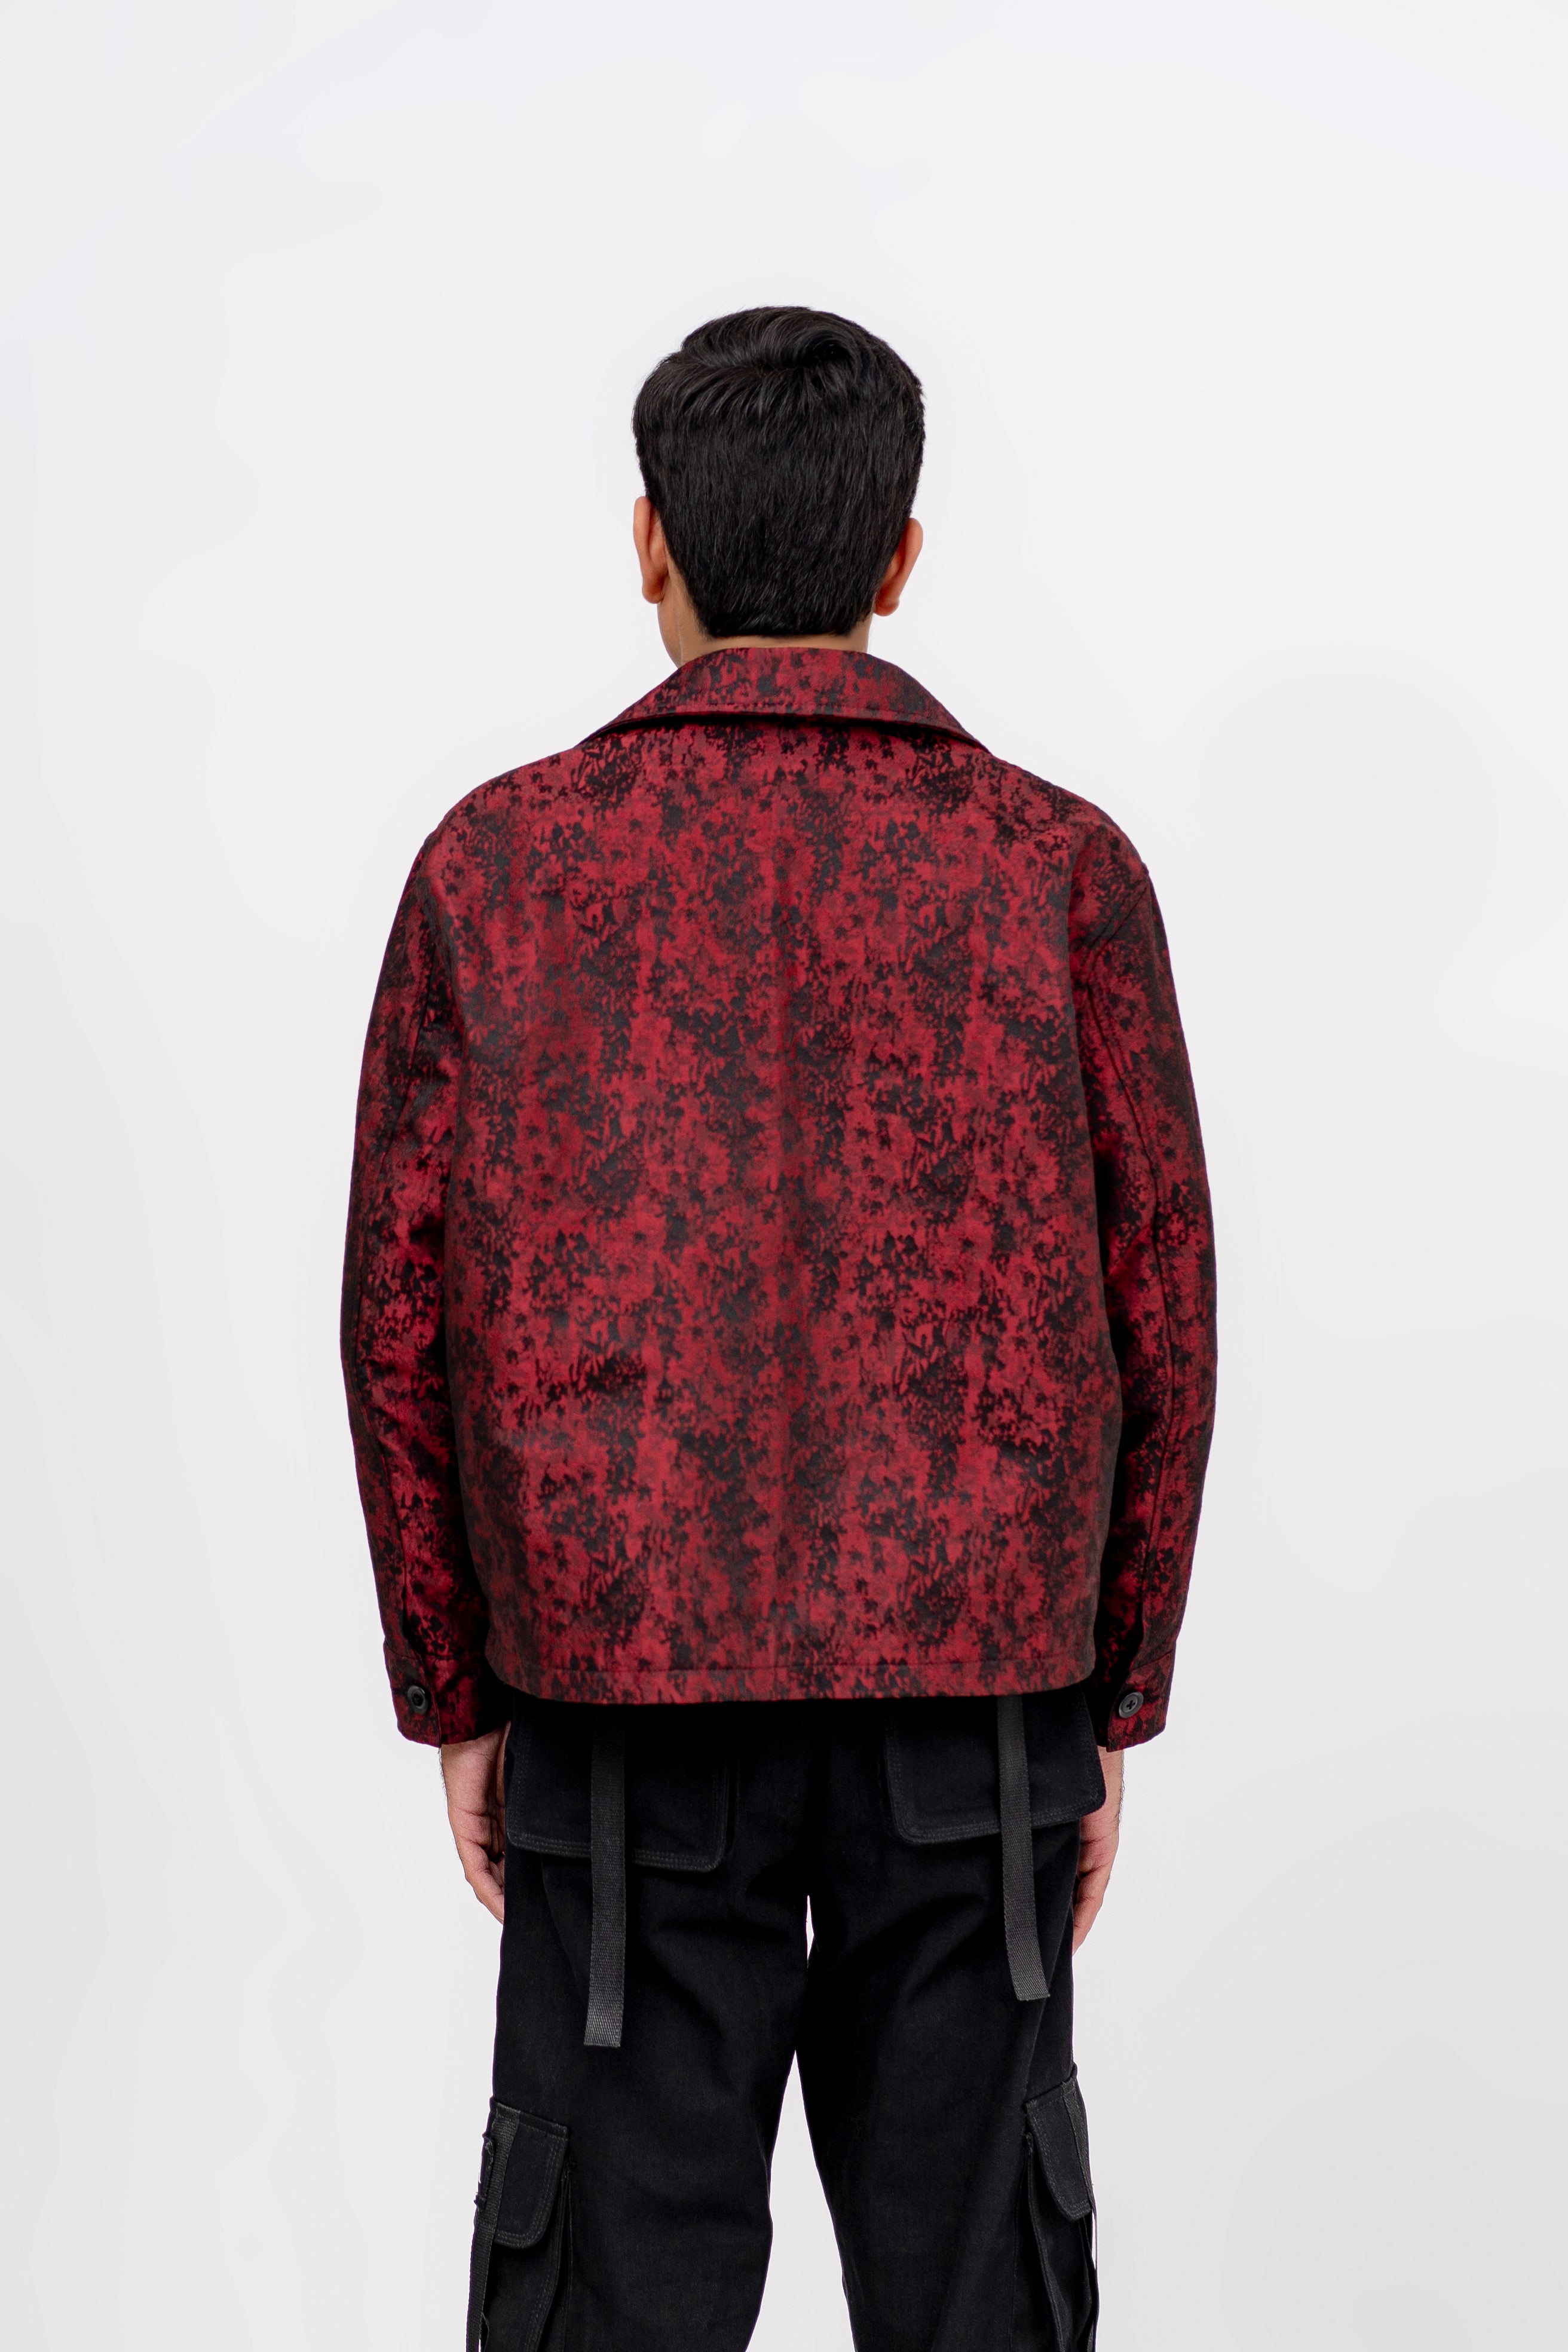 “Crimson Noir Weave” Cross Weaved Woven Cottan Jacket